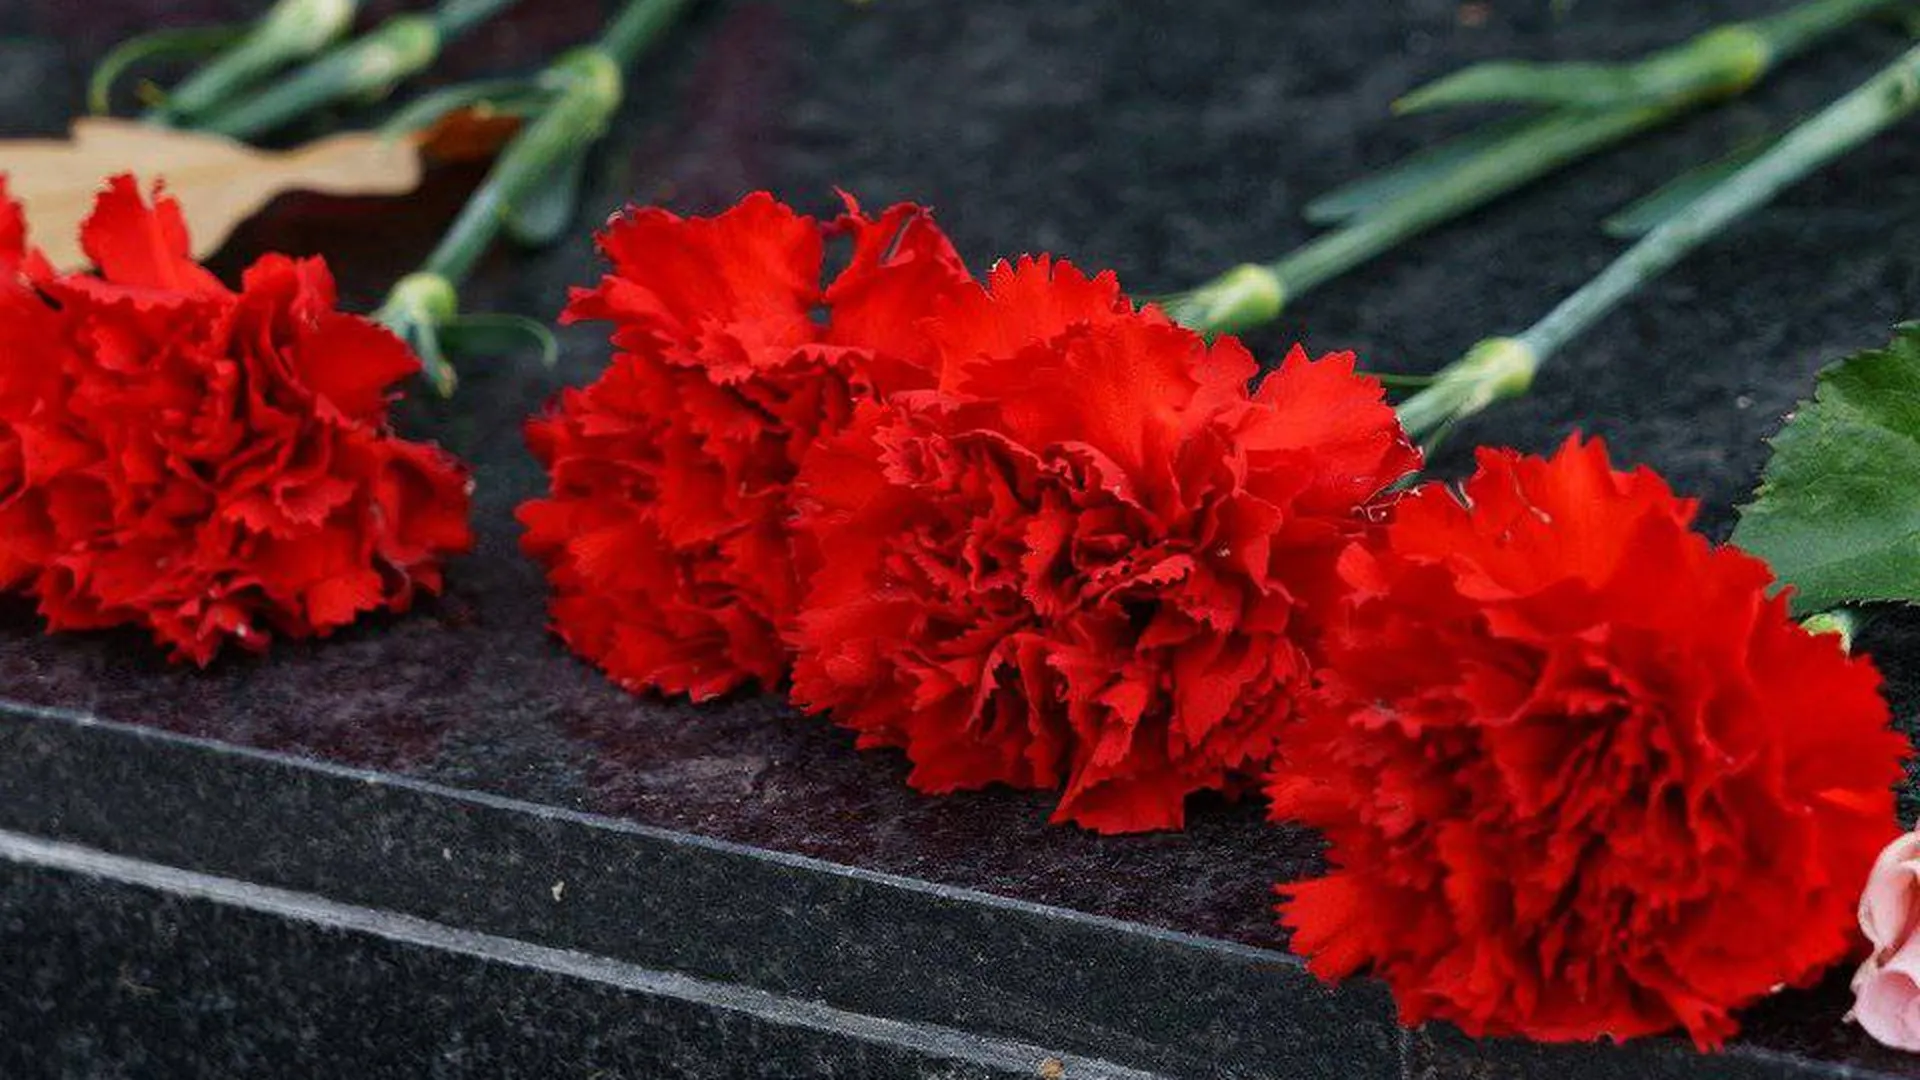 Мемориал в память о погибших появился в МФЦ на юго-востоке Москвы